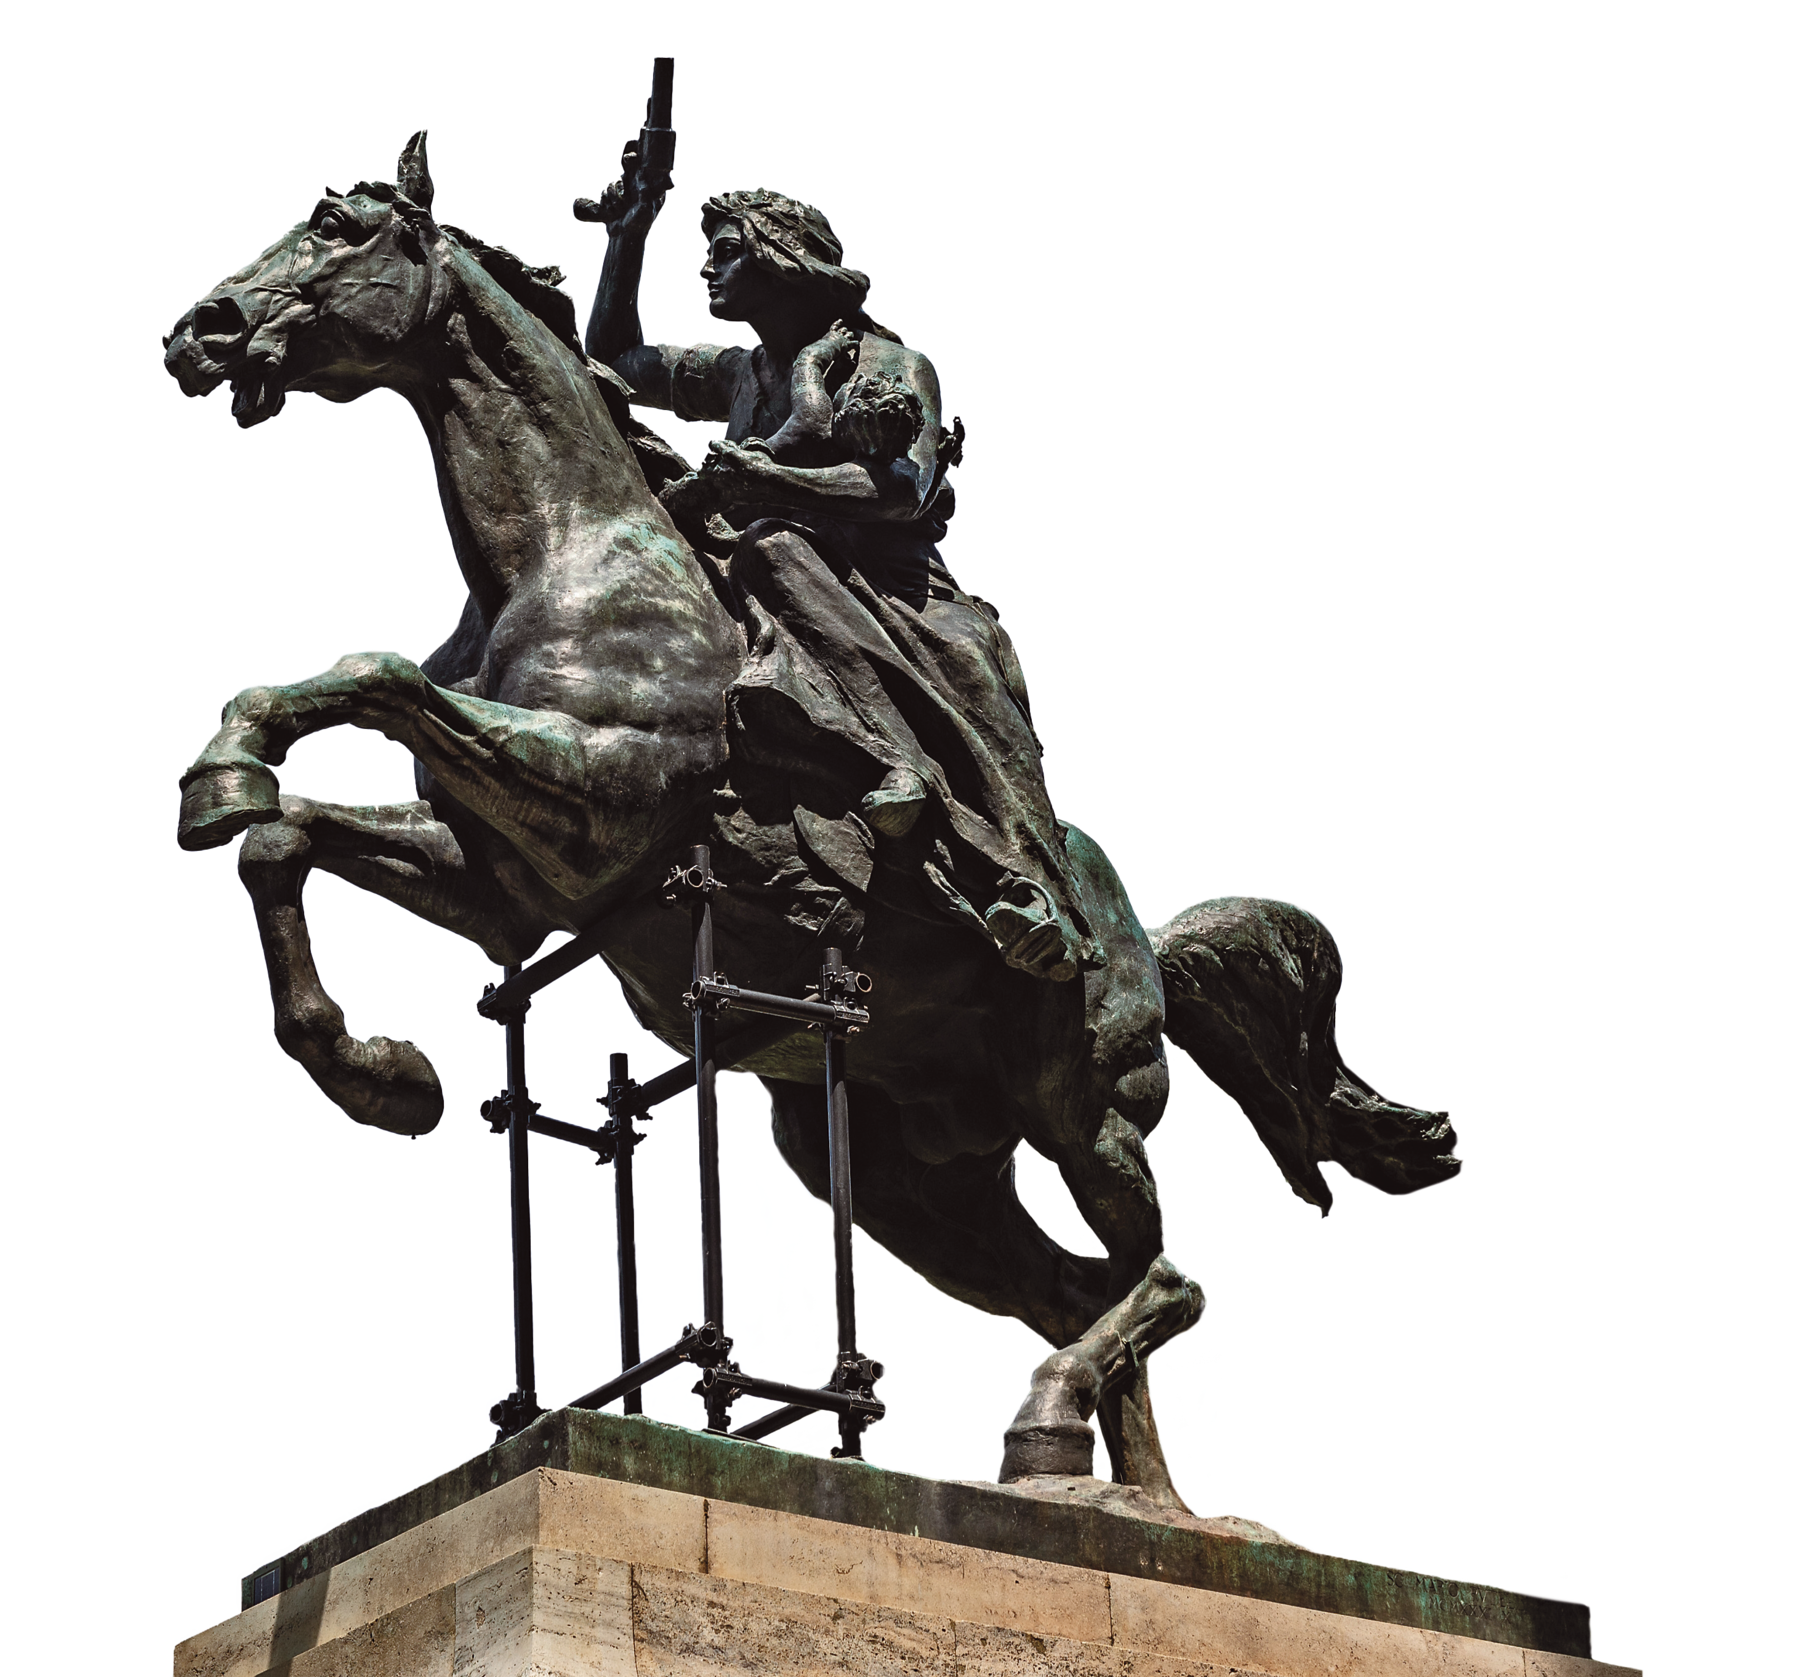 Fotografia. Sobre um pedestal de pedra, a estátua de uma mulher montada em um cavalo. O cavalo está empinando e a mulher empunha uma pistola para o alto com a mão direita. Com o braço esquerdo ela segura um bebê enquanto a mão segura as rédeas do cavalo.